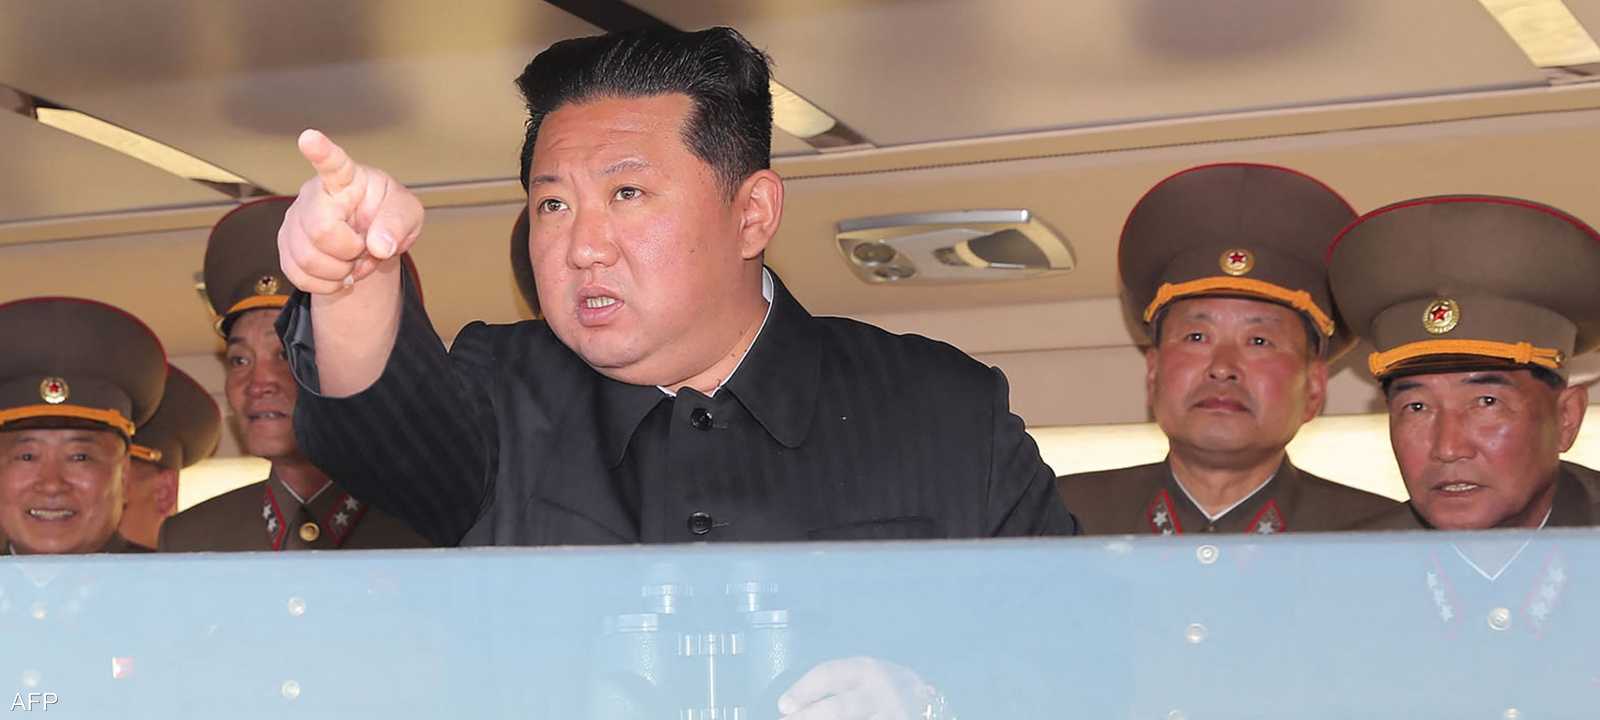 كوريا الشمالية لن تسمح بأي انتهاك لحقوقها السيادية